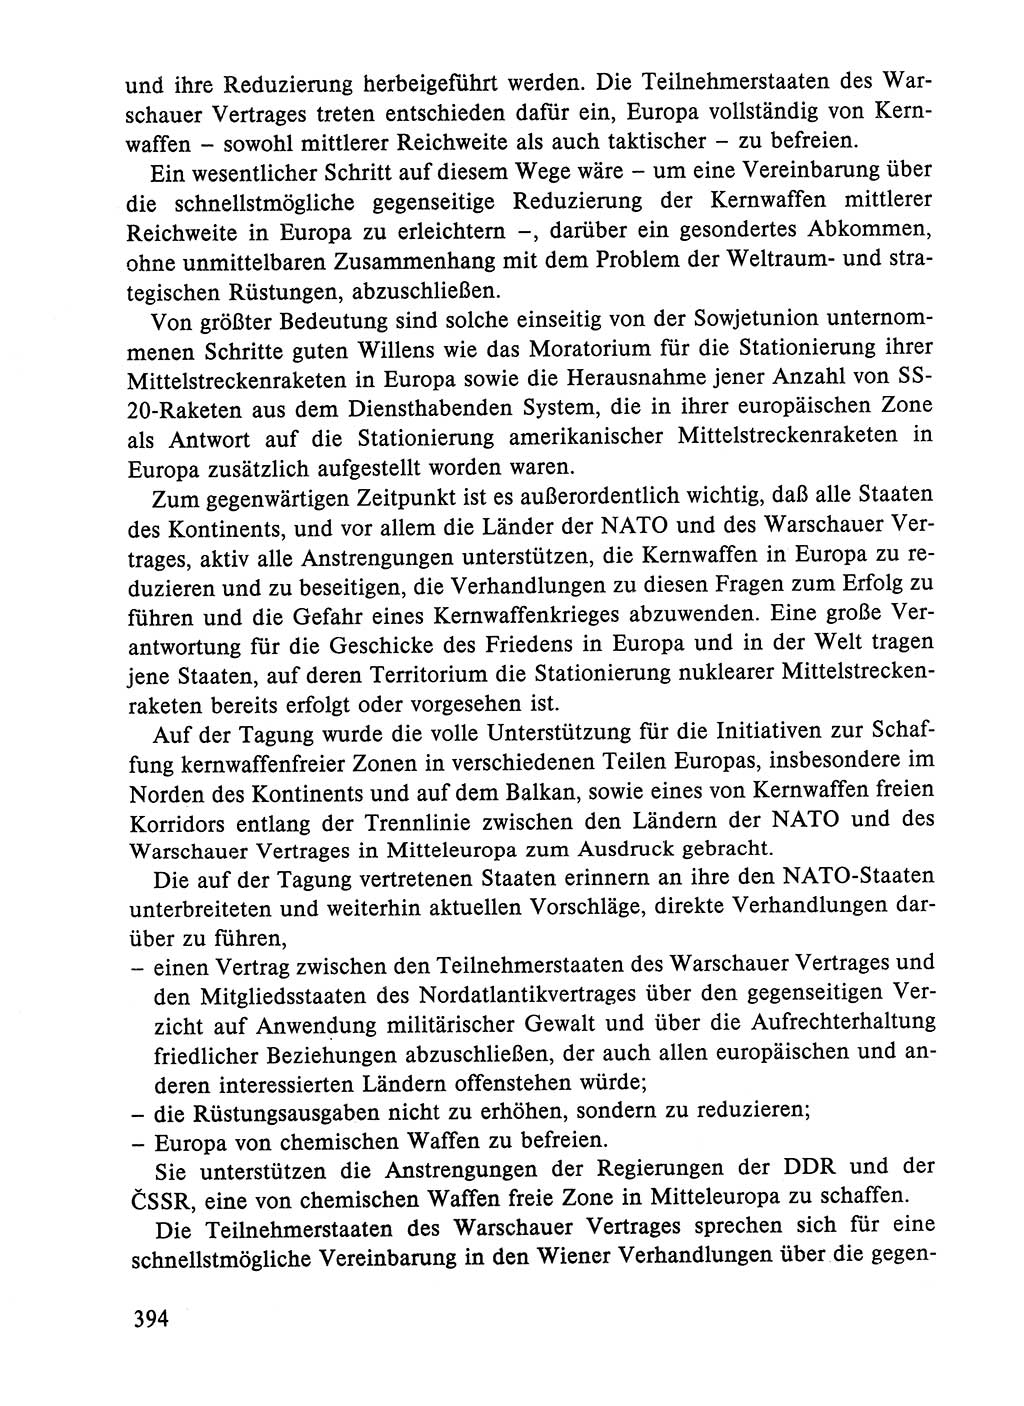 Dokumente der Sozialistischen Einheitspartei Deutschlands (SED) [Deutsche Demokratische Republik (DDR)] 1984-1985, Seite 394 (Dok. SED DDR 1984-1985, S. 394)